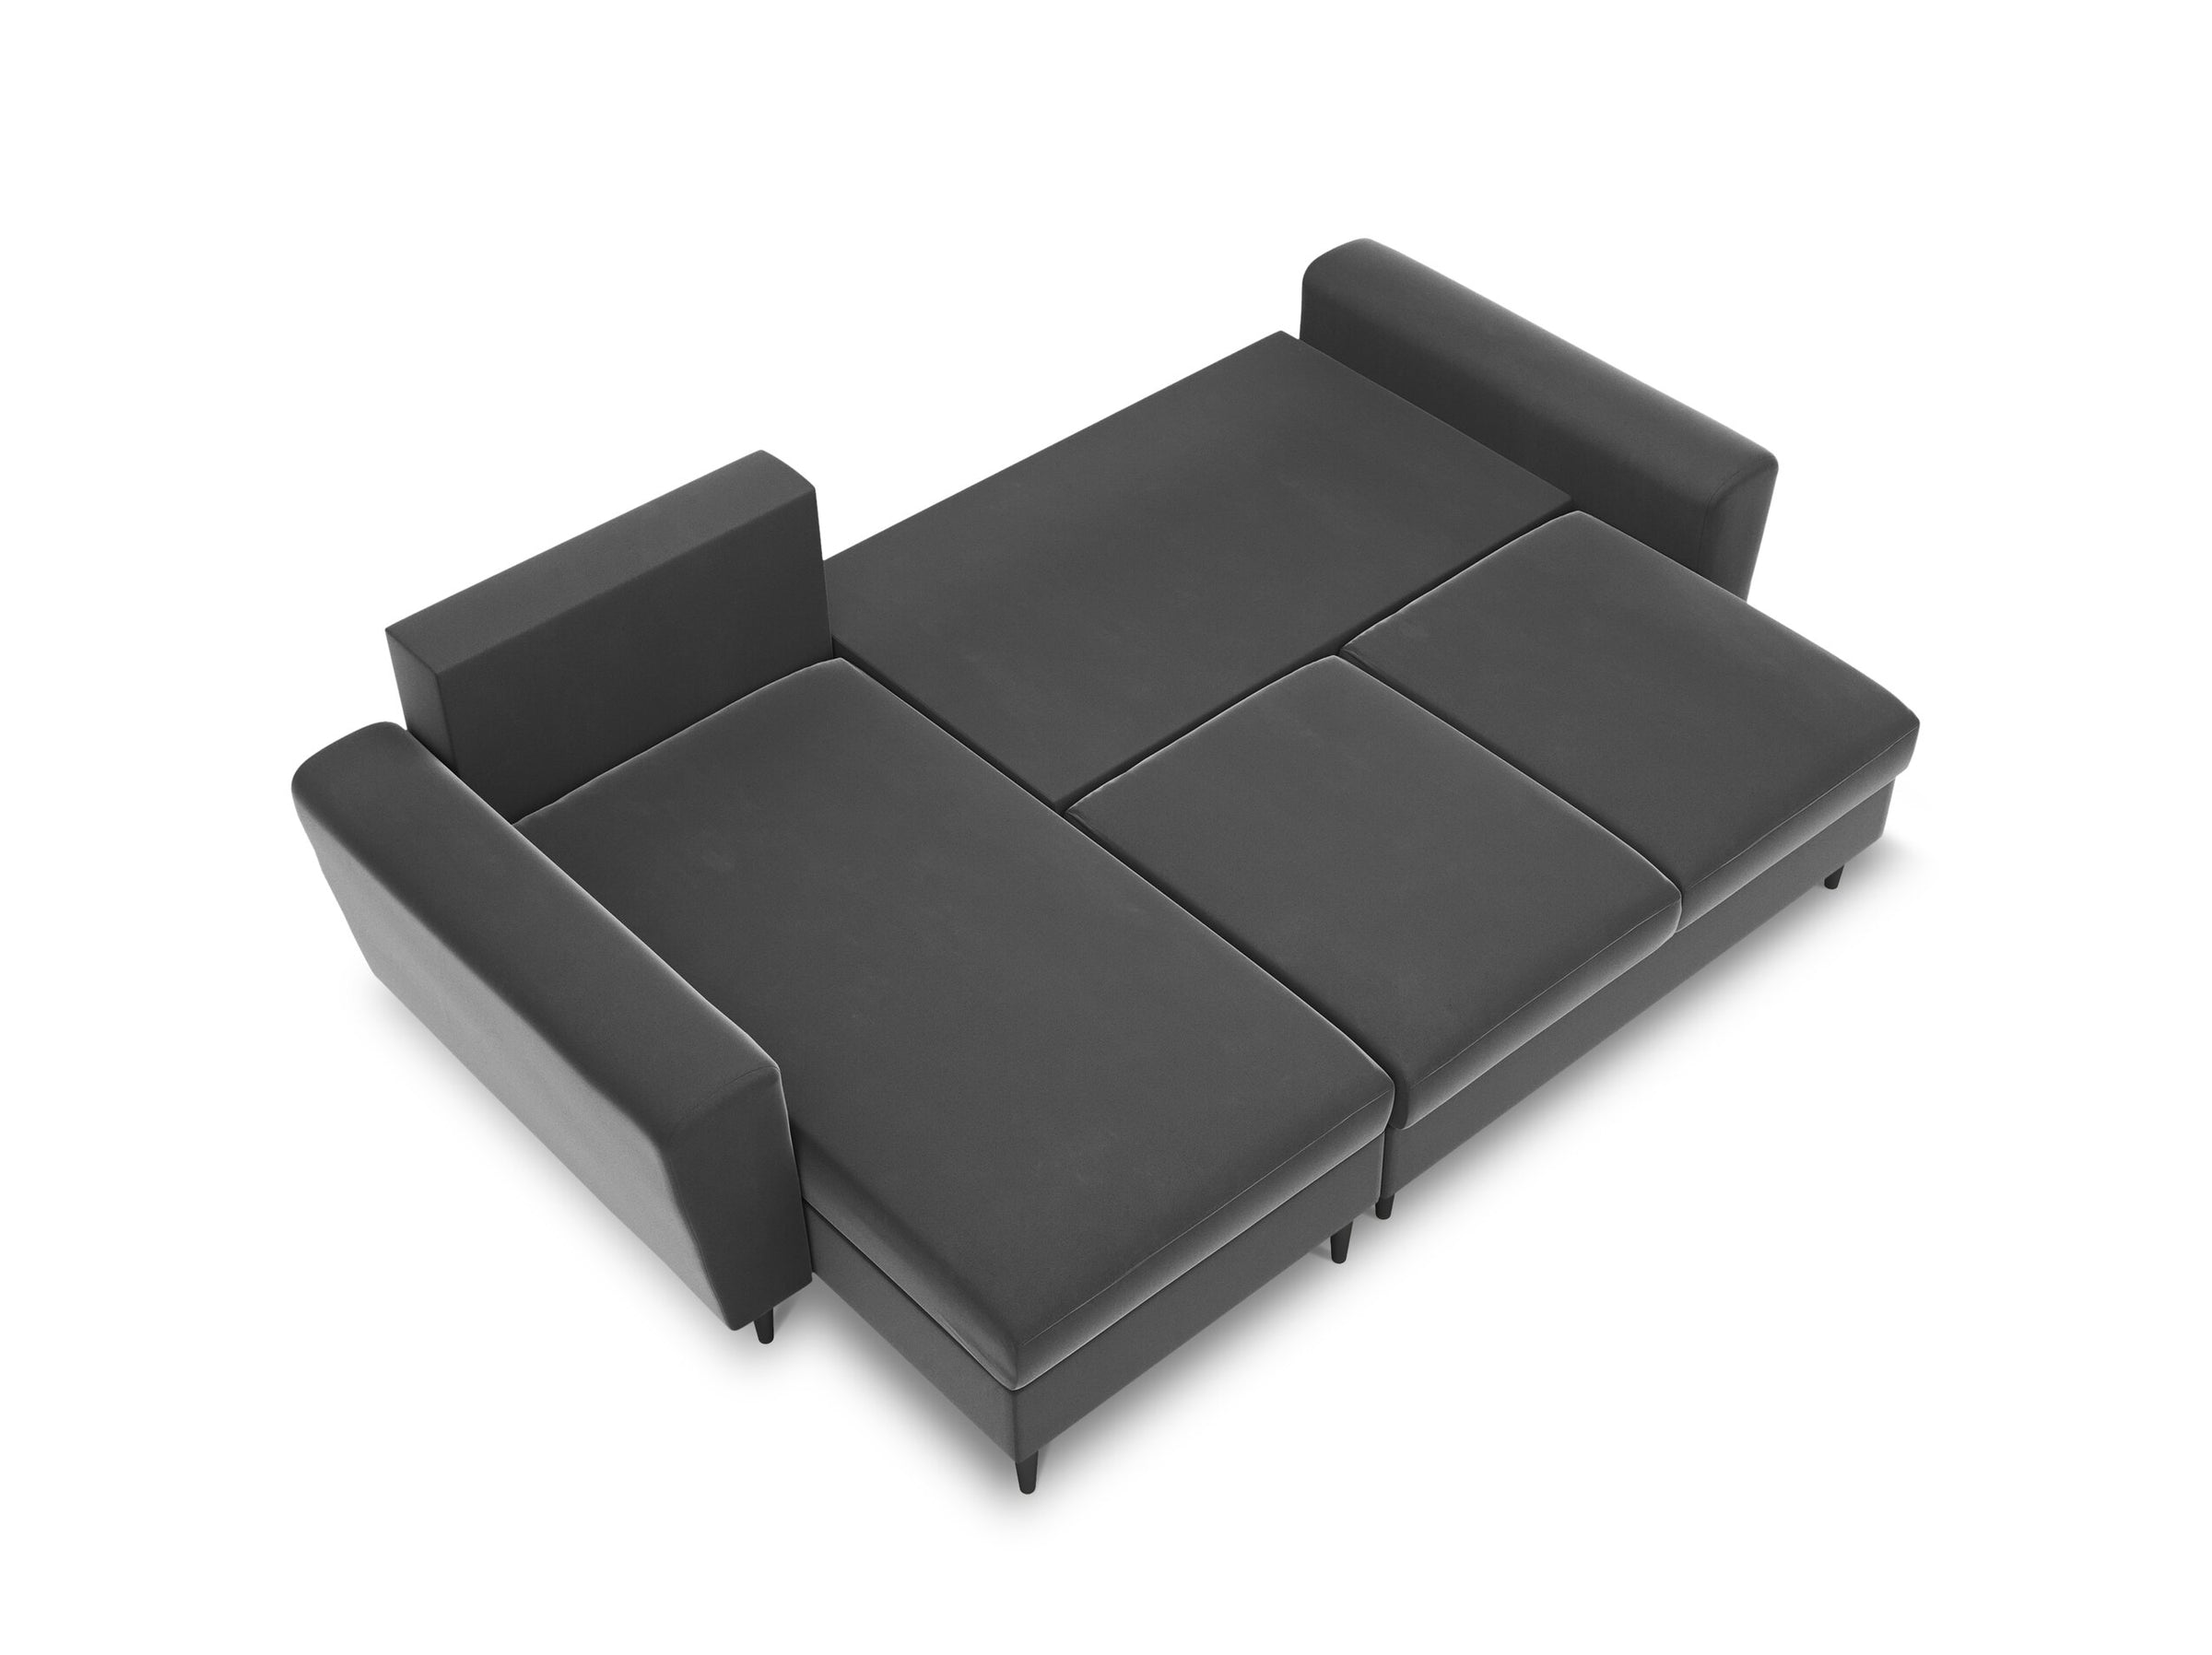 Moghan sofás terciopelo gris claro